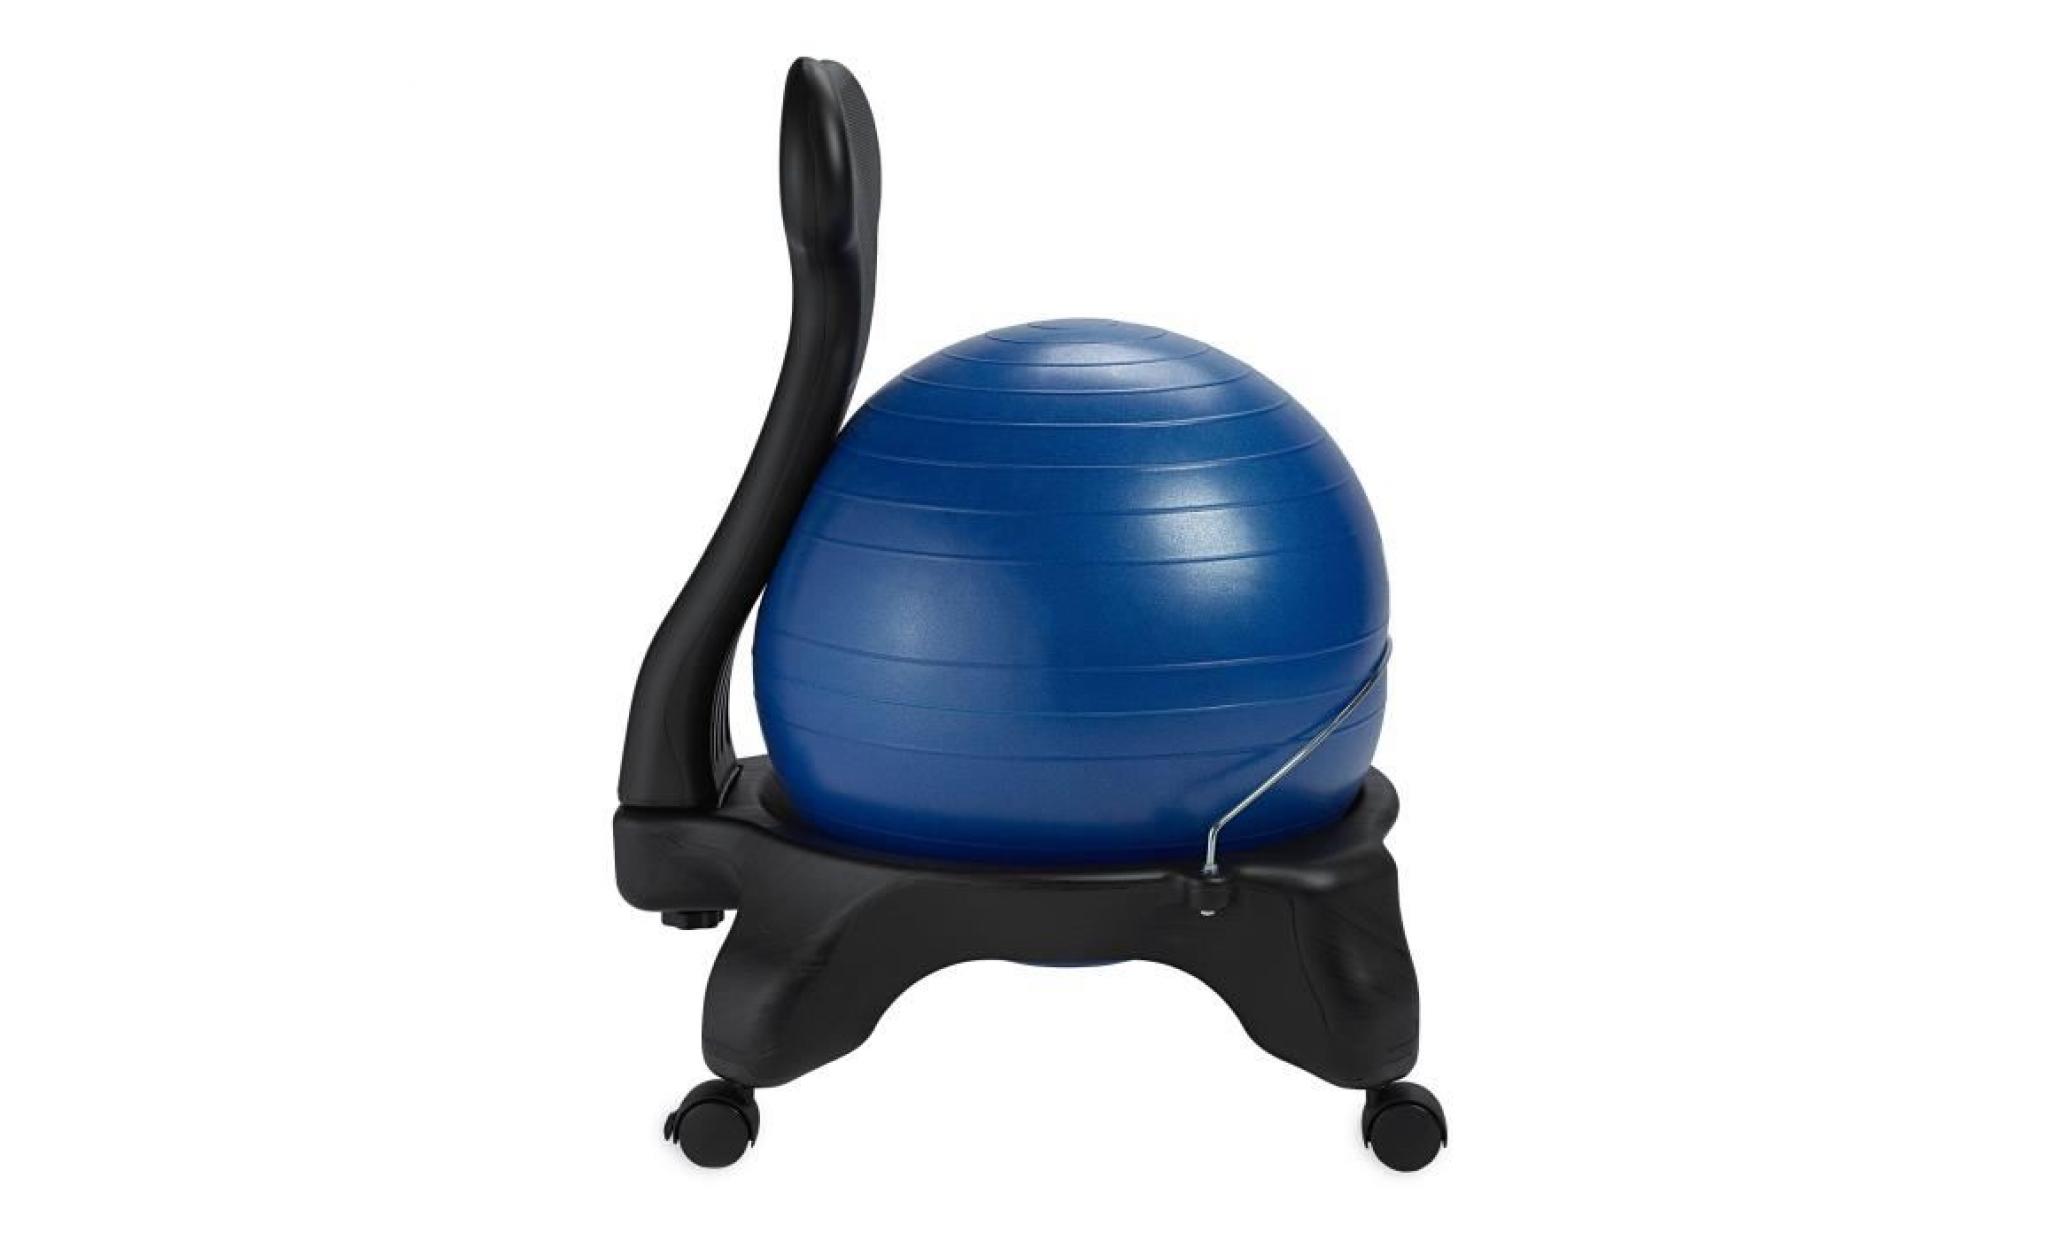 classique balance ball chair   yoga exercice stability ball haut de gamme chaise ergonomique pour la maison et offi gcbnu